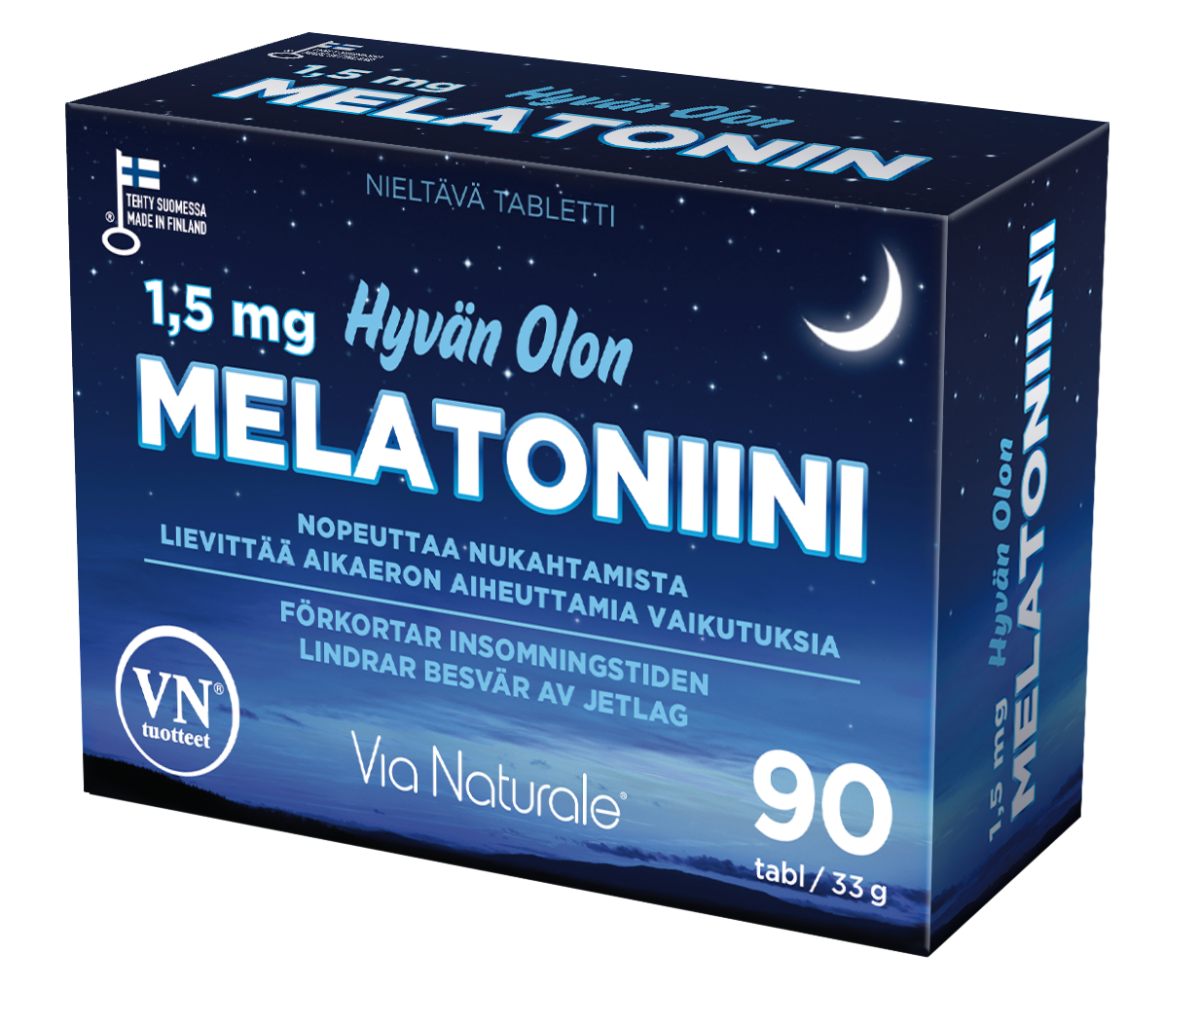 Via Naturale Melatonin 1,5 mg